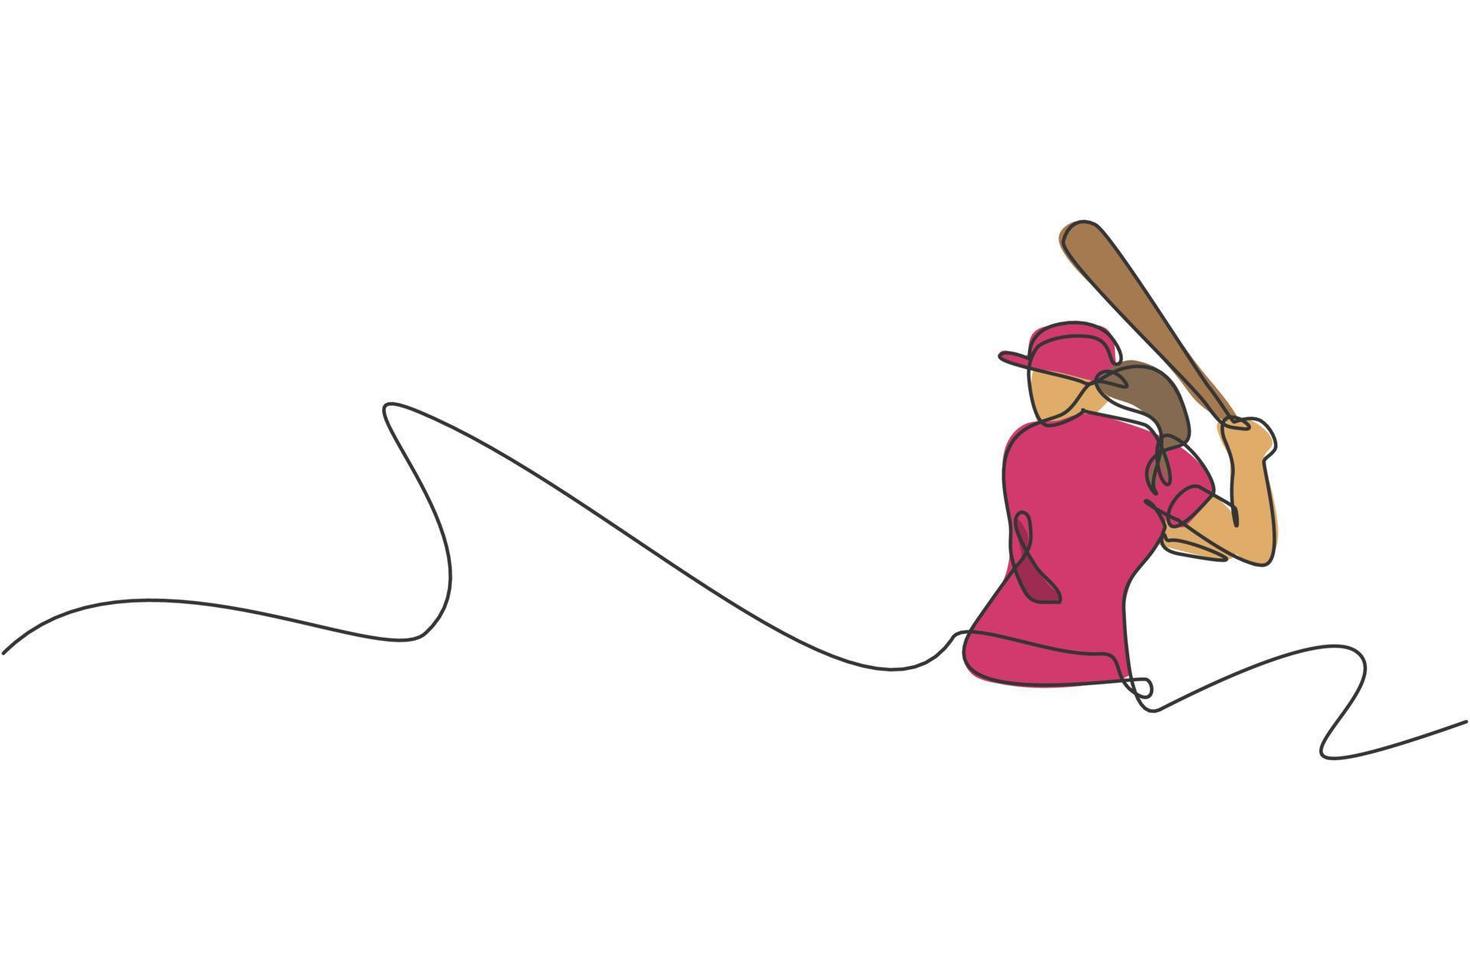 enkele doorlopende lijntekening jonge behendige vrouw honkbalspeler oefenen om de bal te raken. sport oefening concept. trendy één lijn tekenen ontwerp grafische vectorillustratie voor honkbal promotie media vector